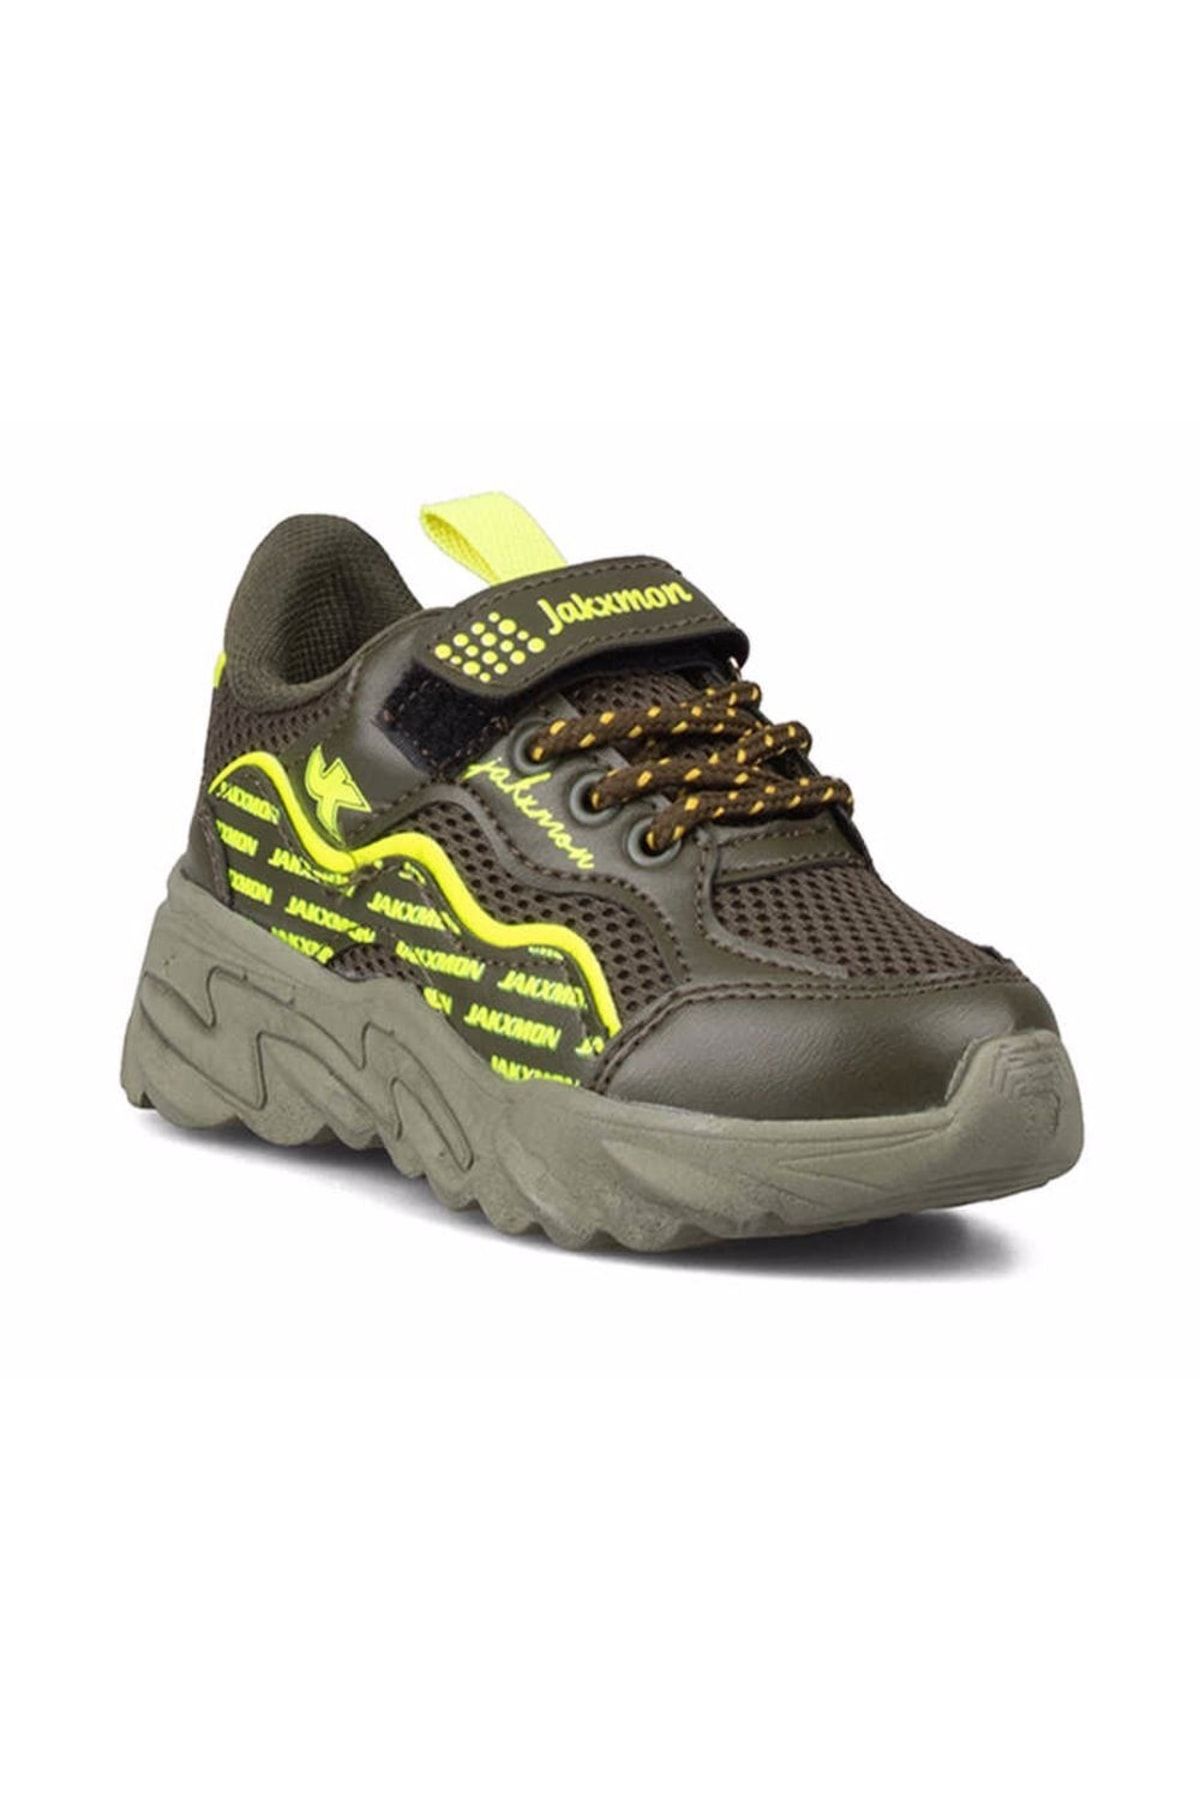 Jakxmon 06 Haki Yeşil Cırtlı Rahat Hafif Taban Nefes Alabilen Unisex Anorak Yürüyüş Spor Ayakkabısı